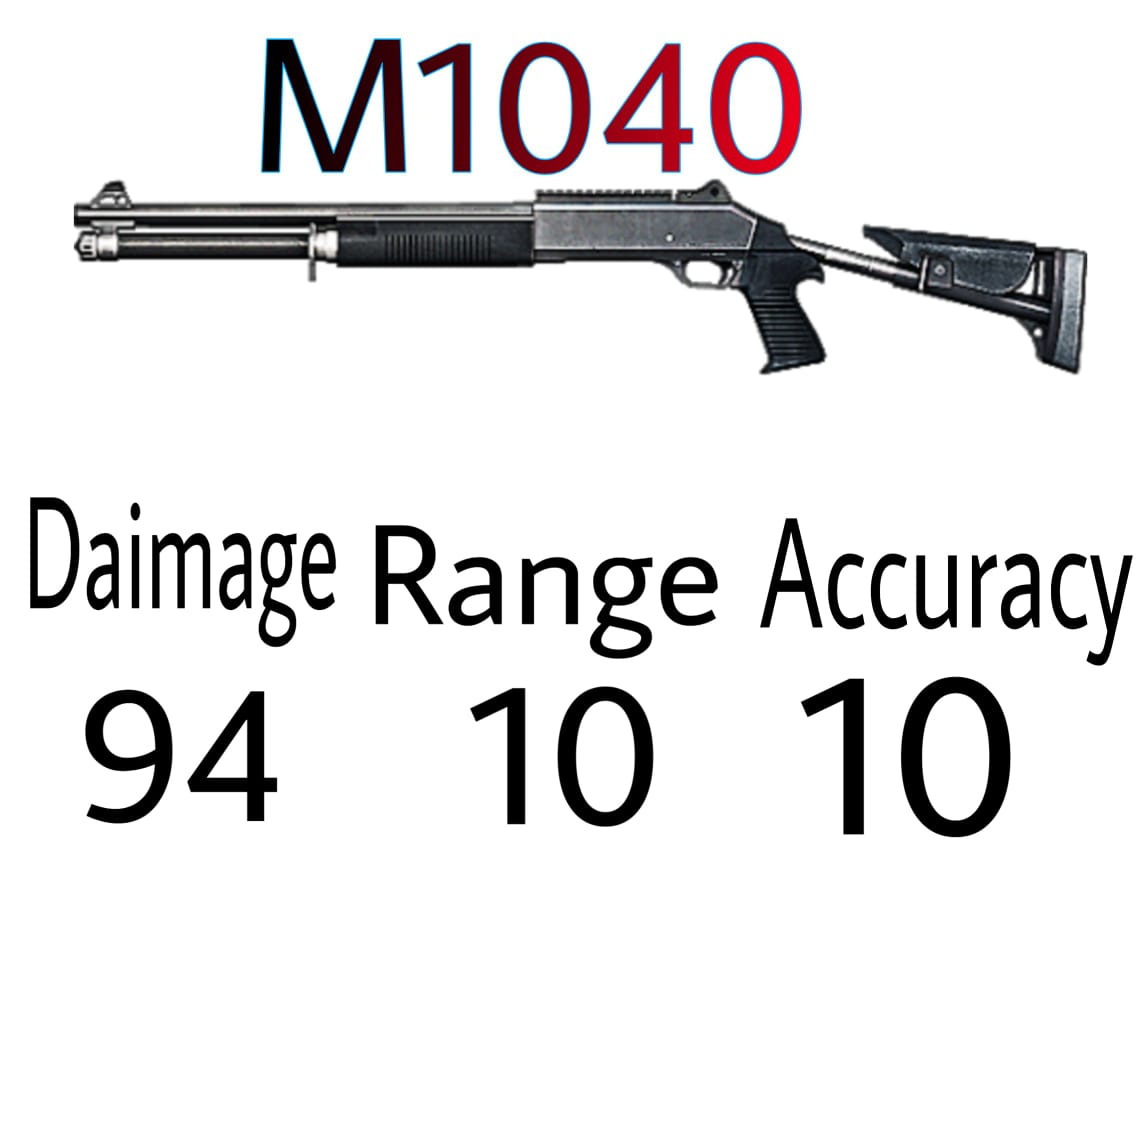 m1040